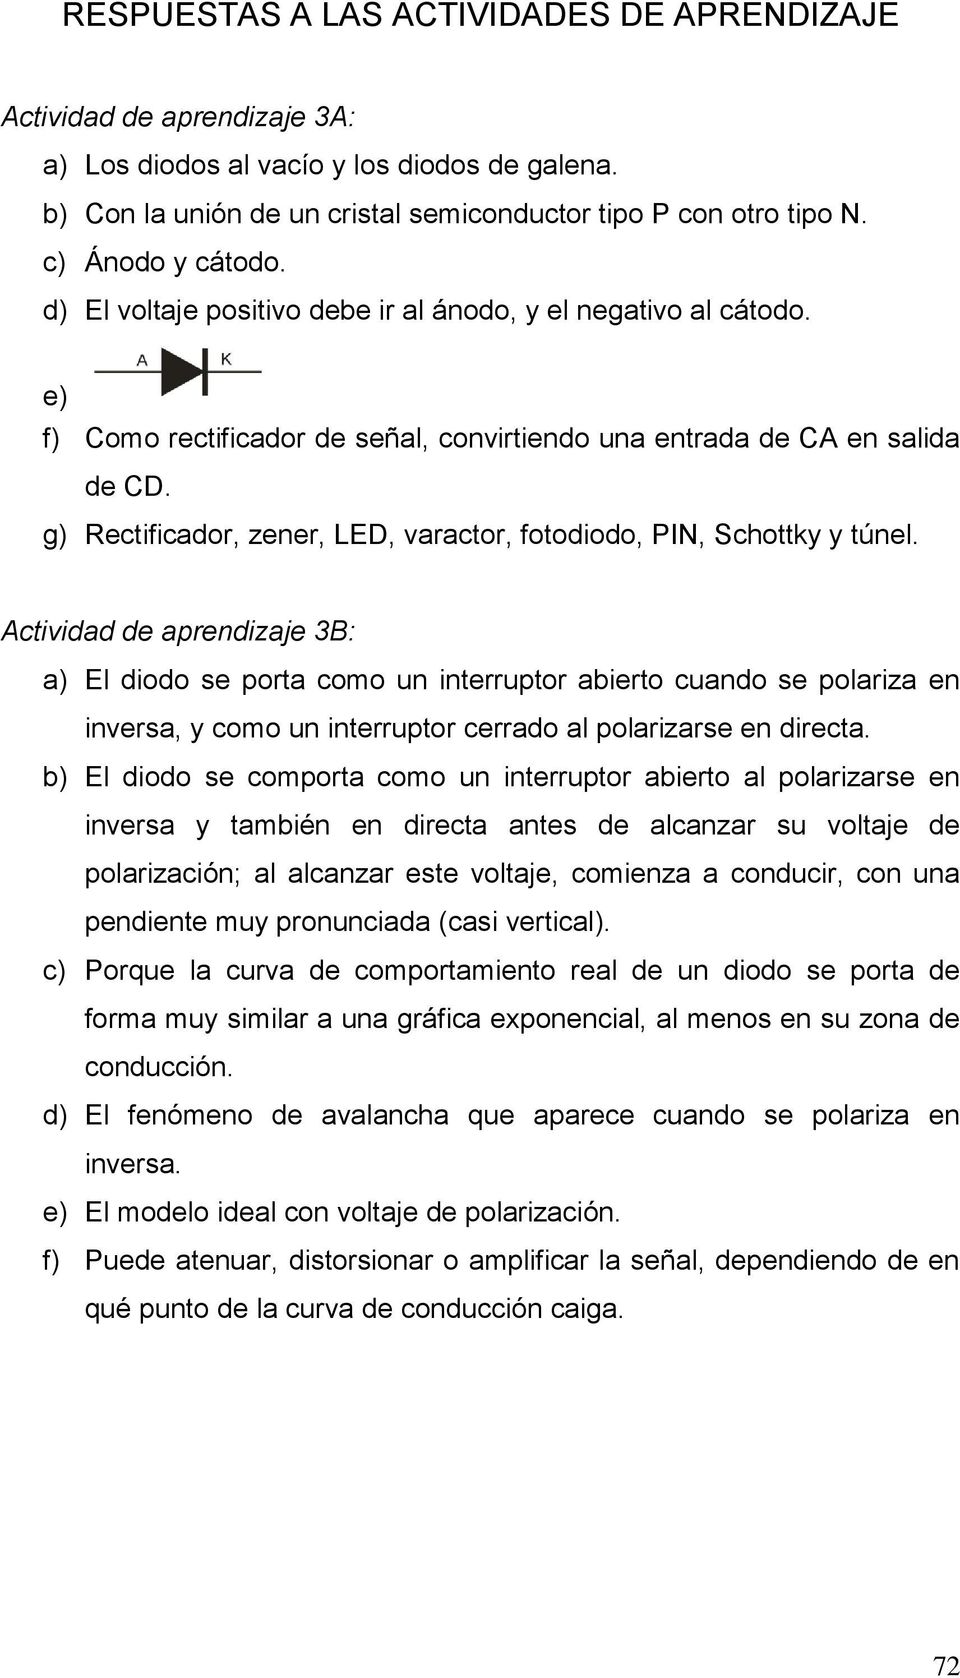 g) Rectificador, zener, LED, varactor, fotodiodo, PIN, Schottky y túnel.